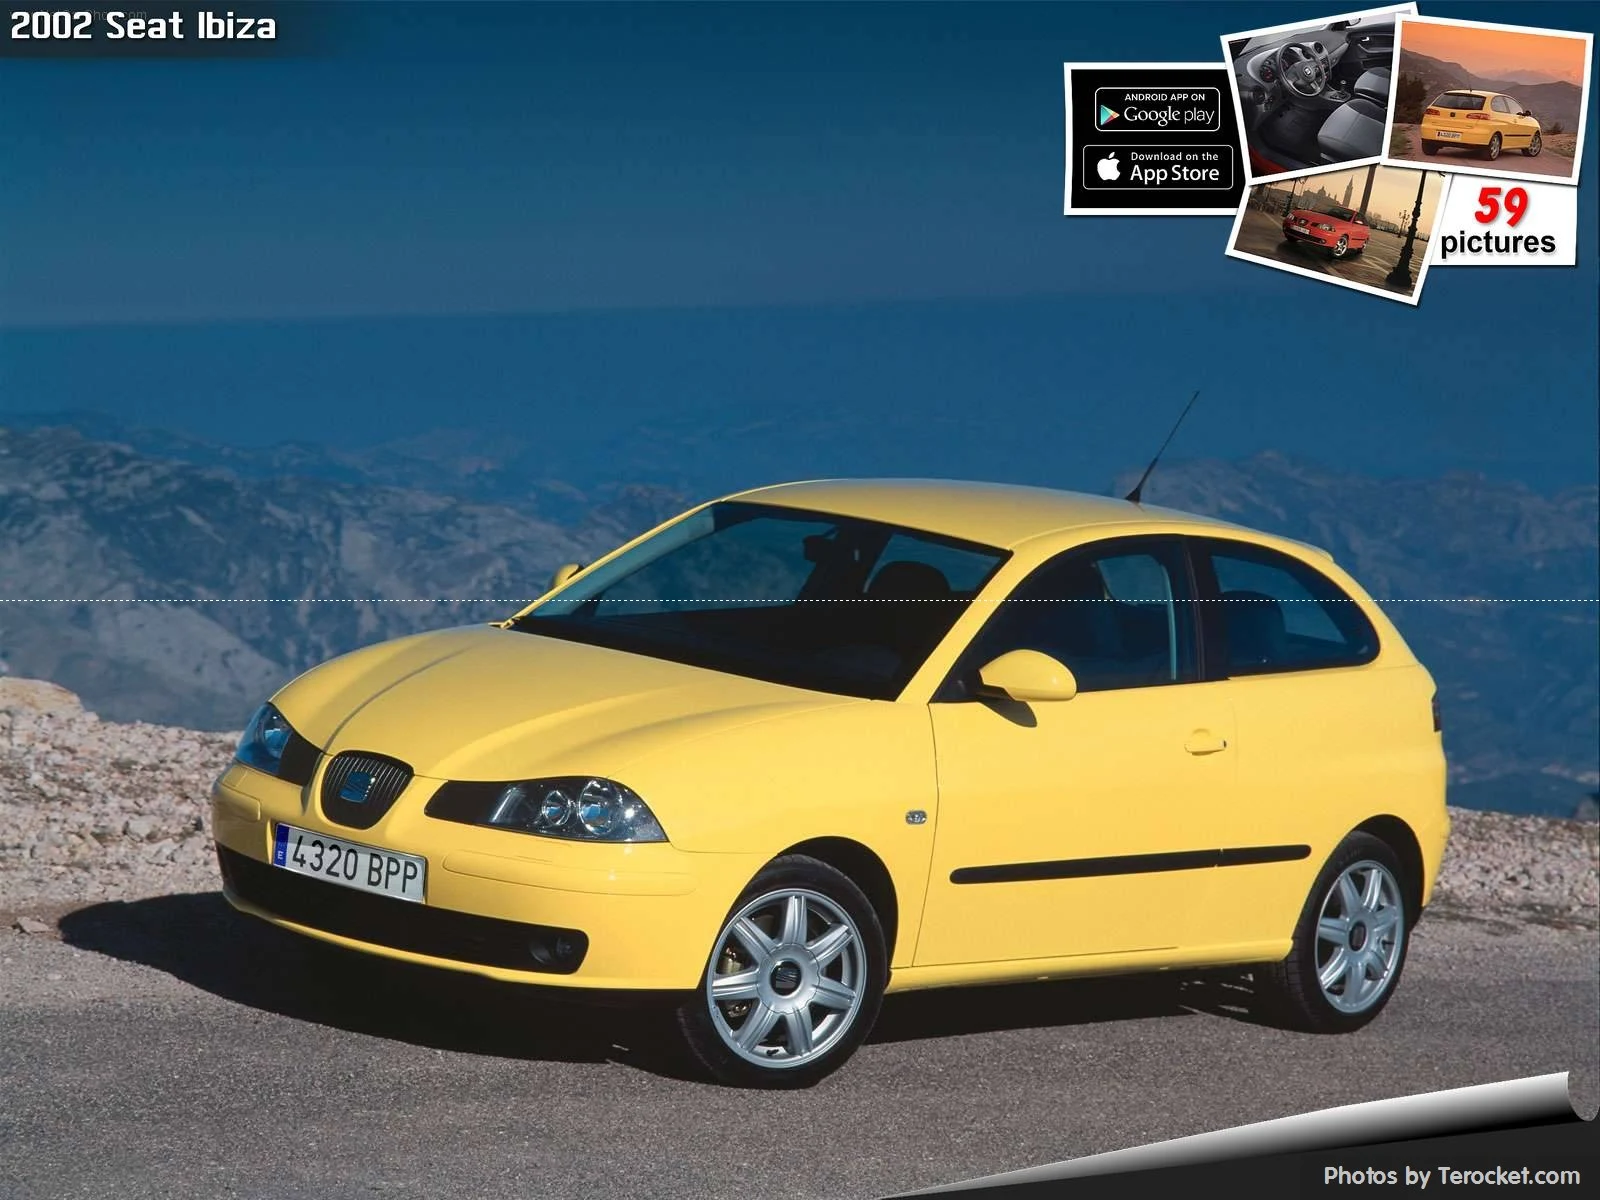 Hình ảnh xe ô tô Seat Ibiza 2002 & nội ngoại thất